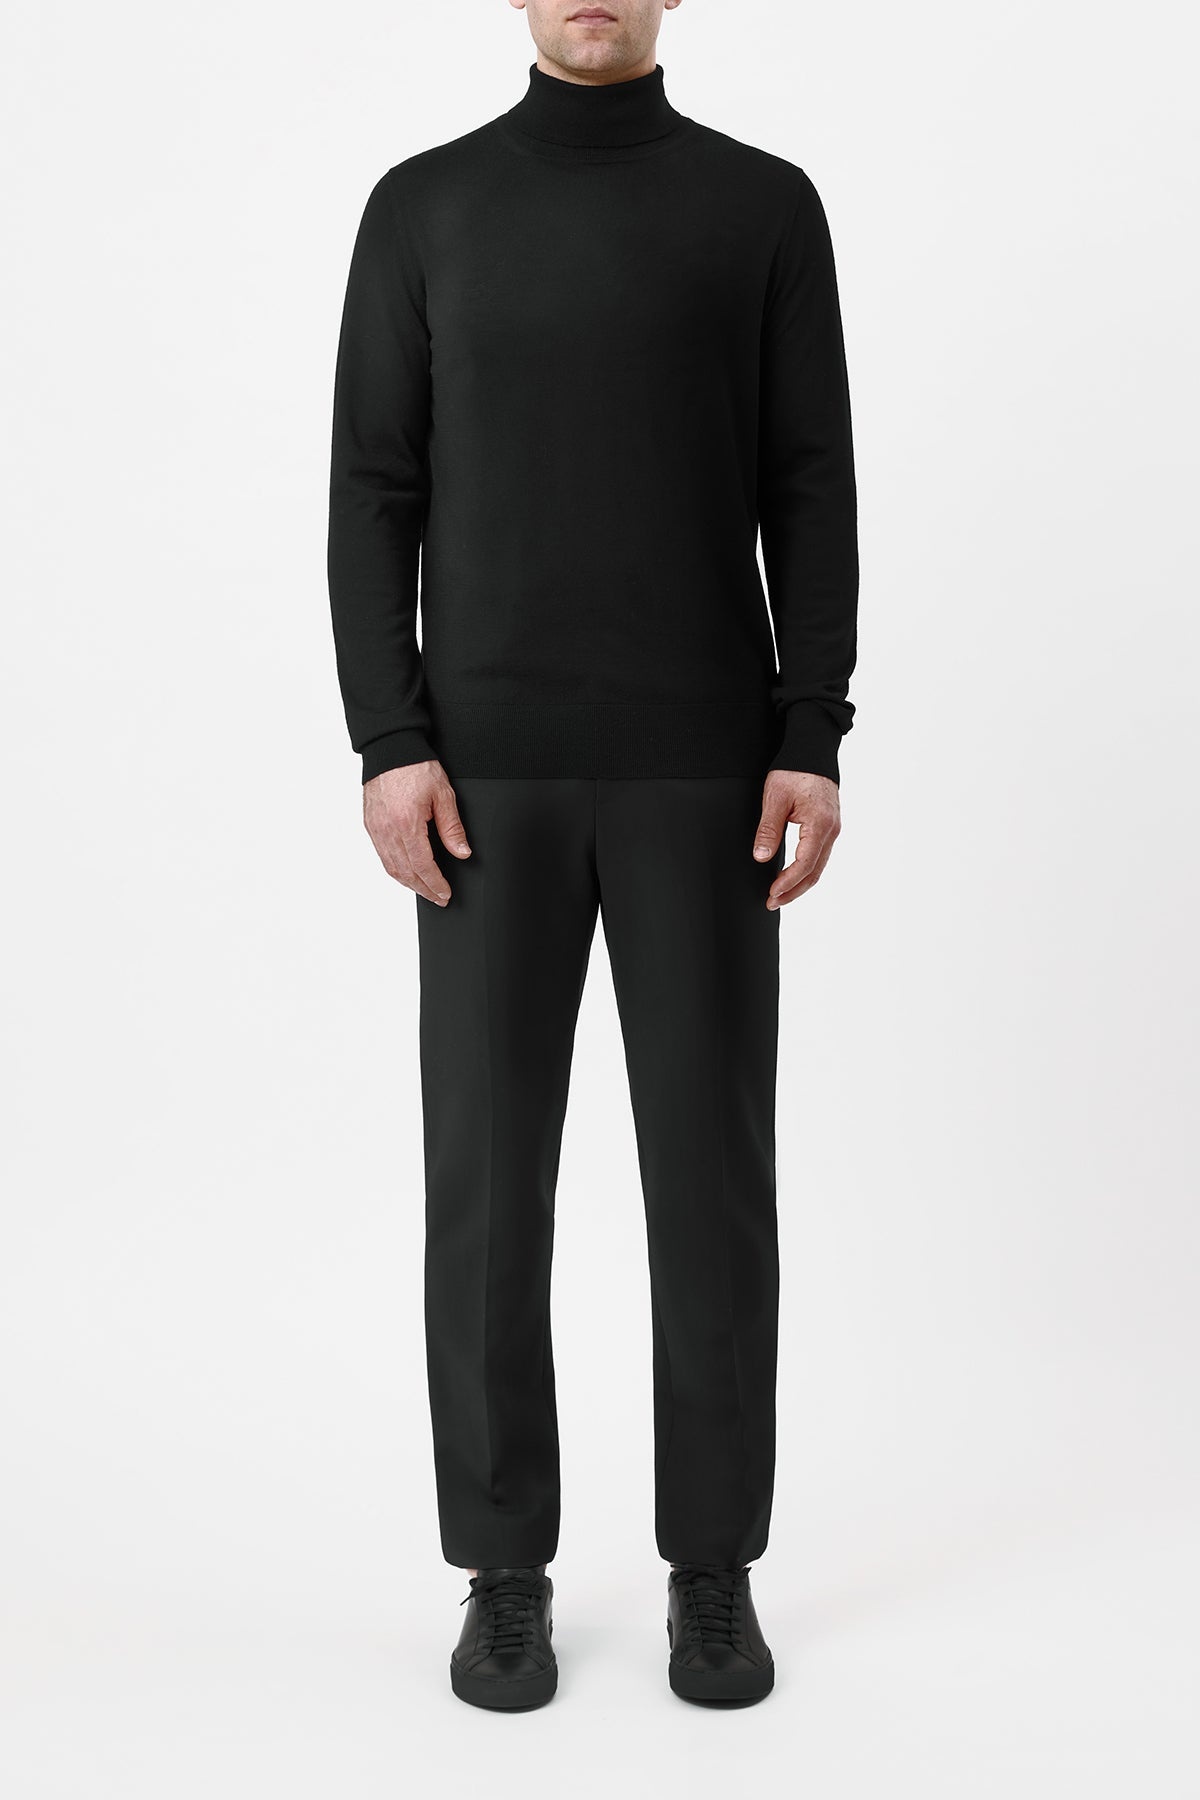 Sebastian Pant in Black Sportswear Wool - 2